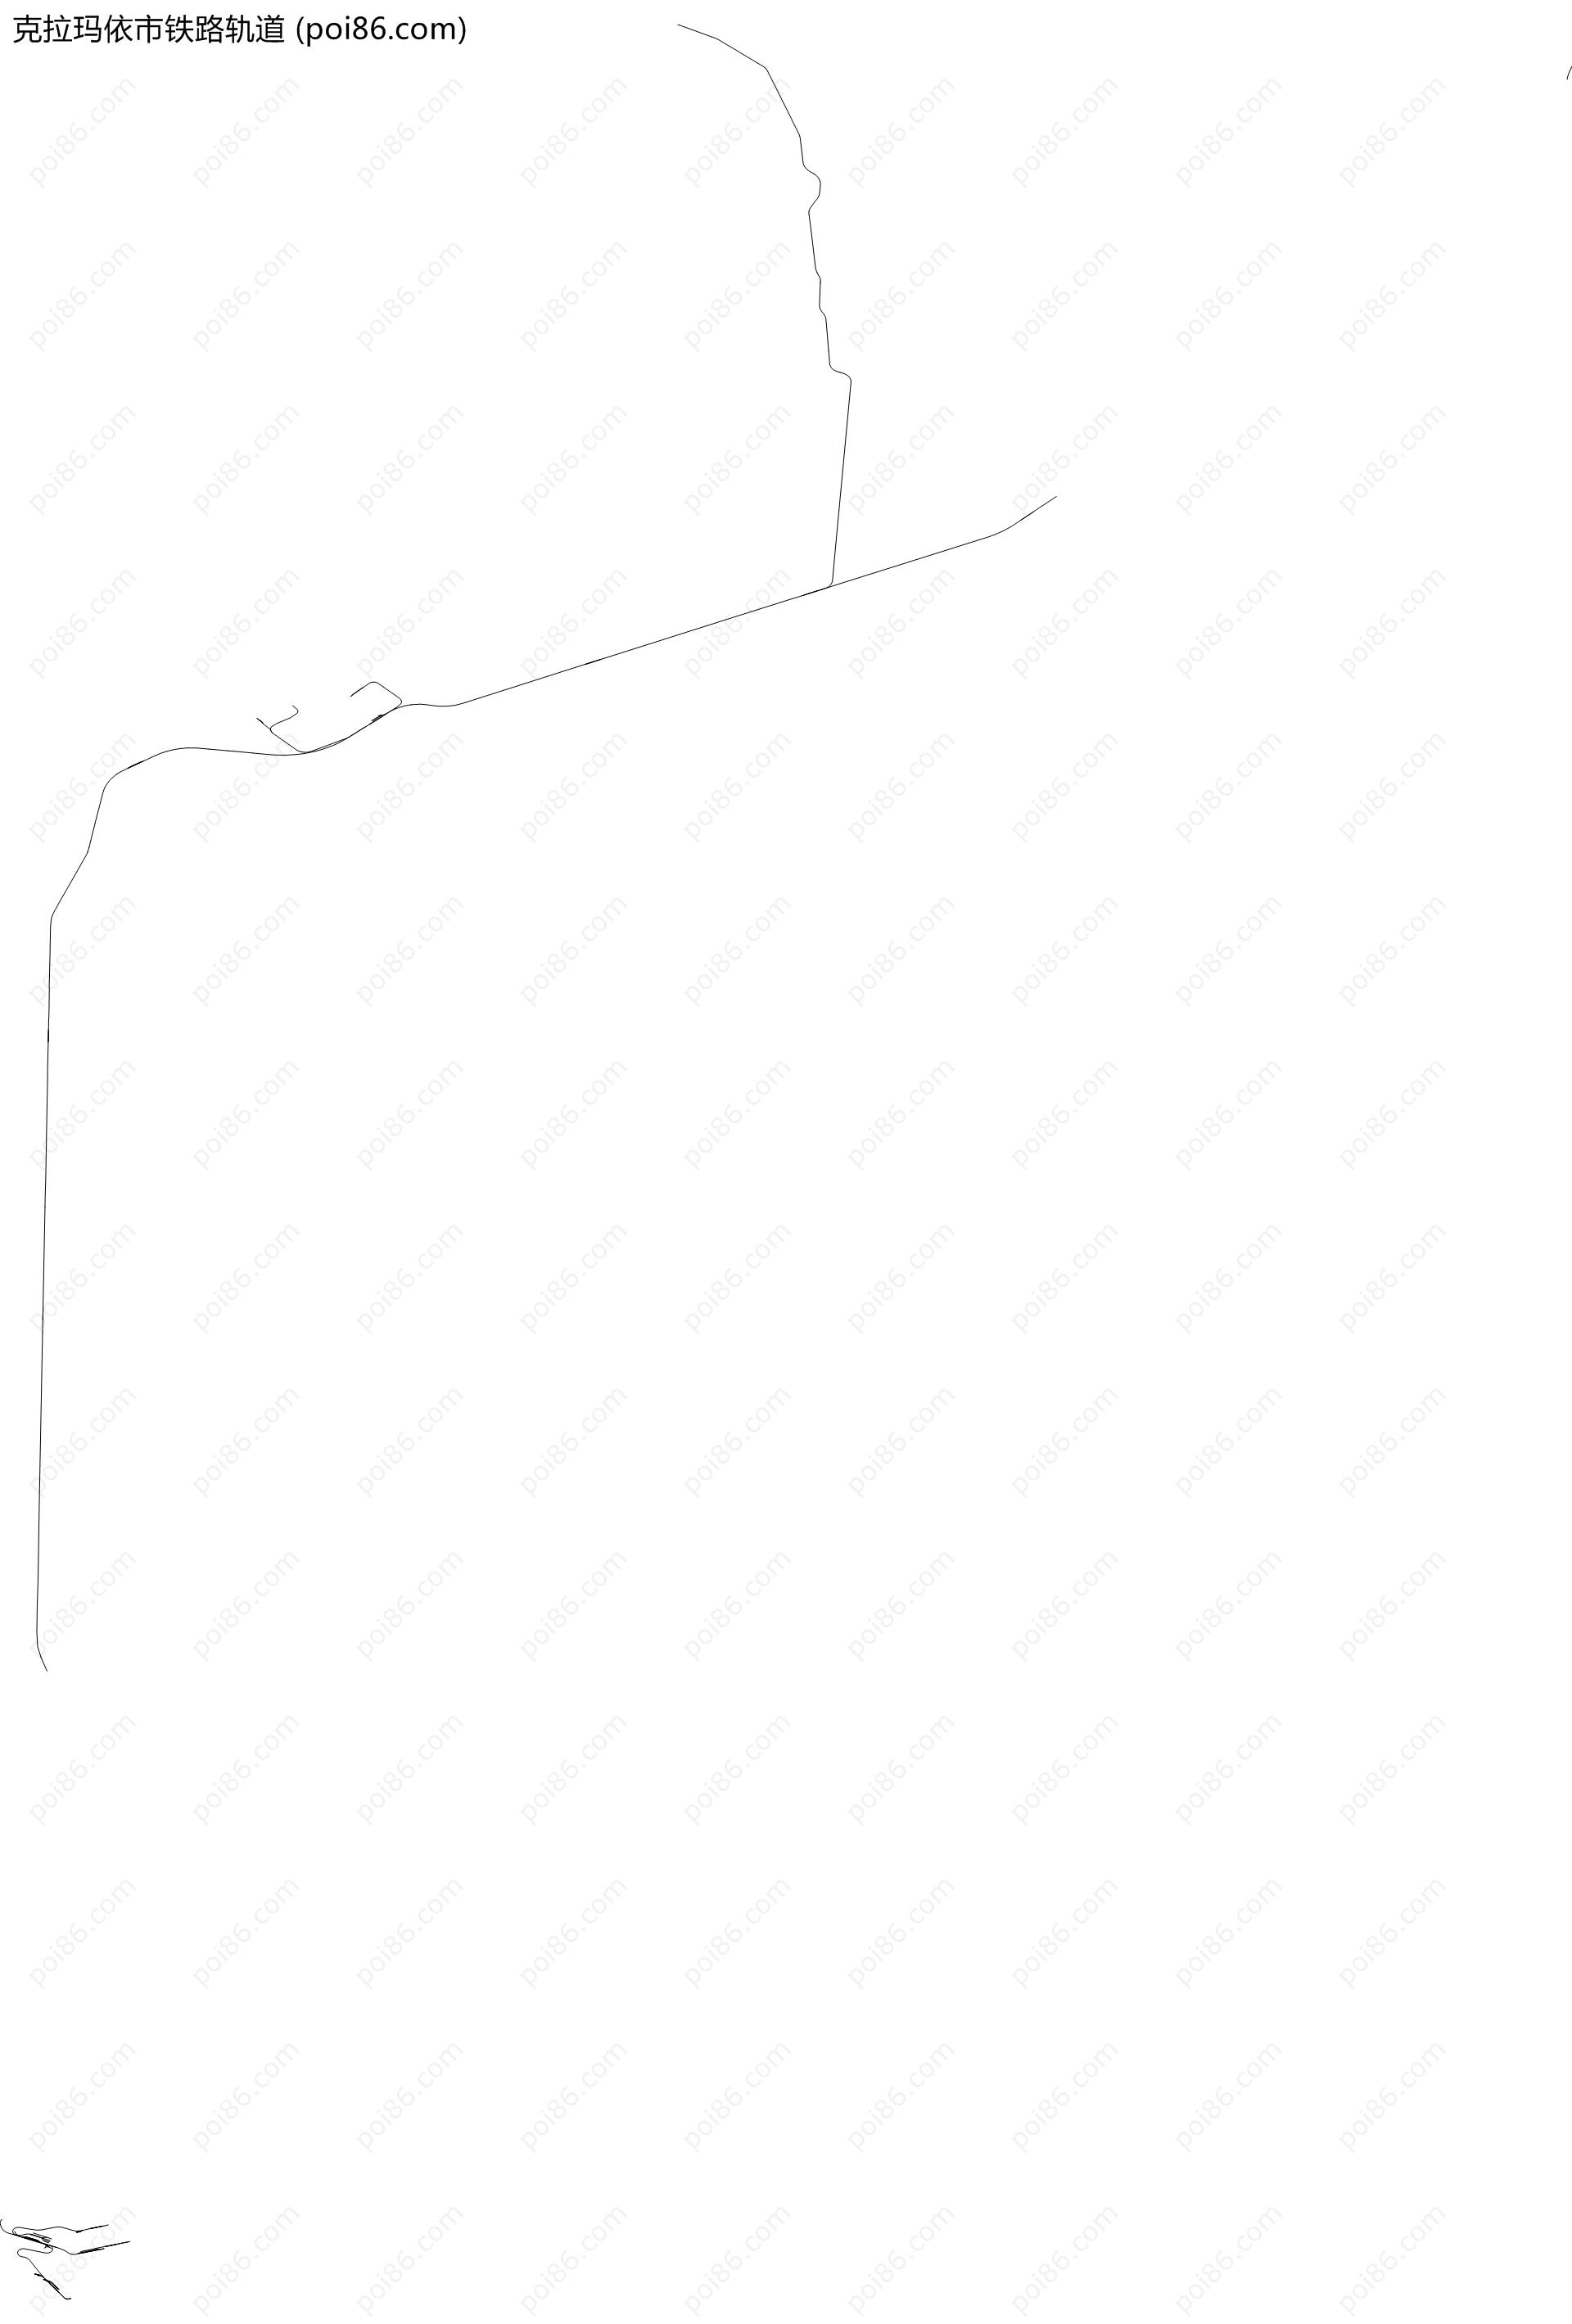 克拉玛依市铁路轨道地图